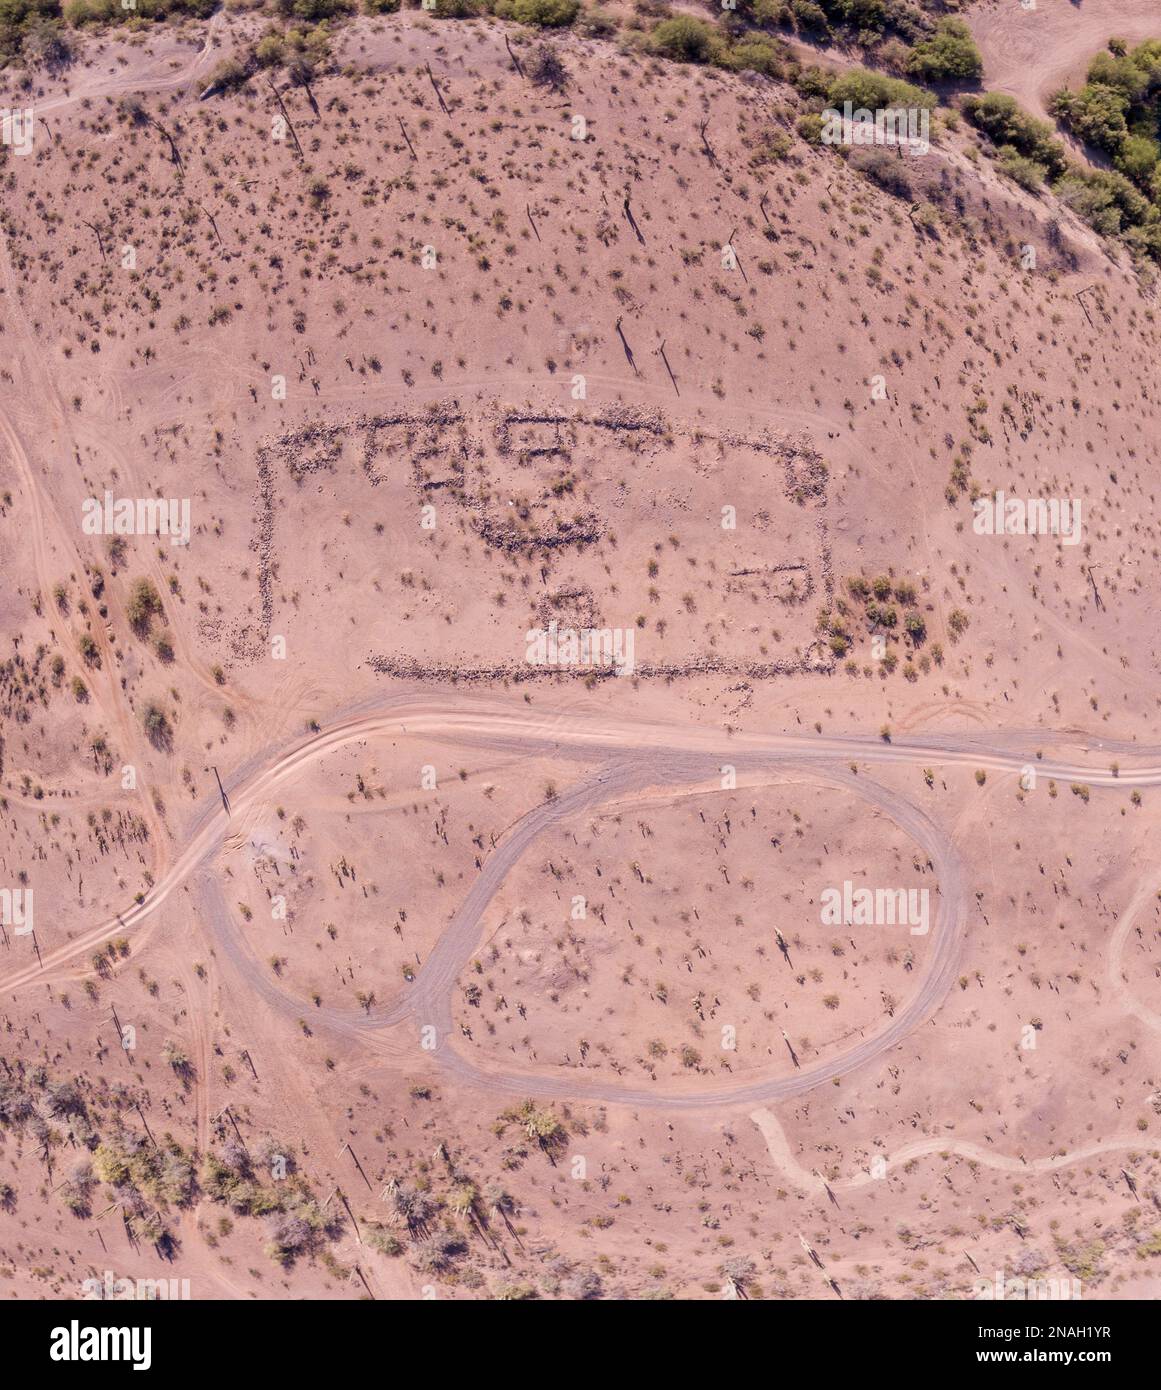 An aerial view of Hohokam ruins near Agua Fria river, Peoria Lakes, Arizona Stock Photo